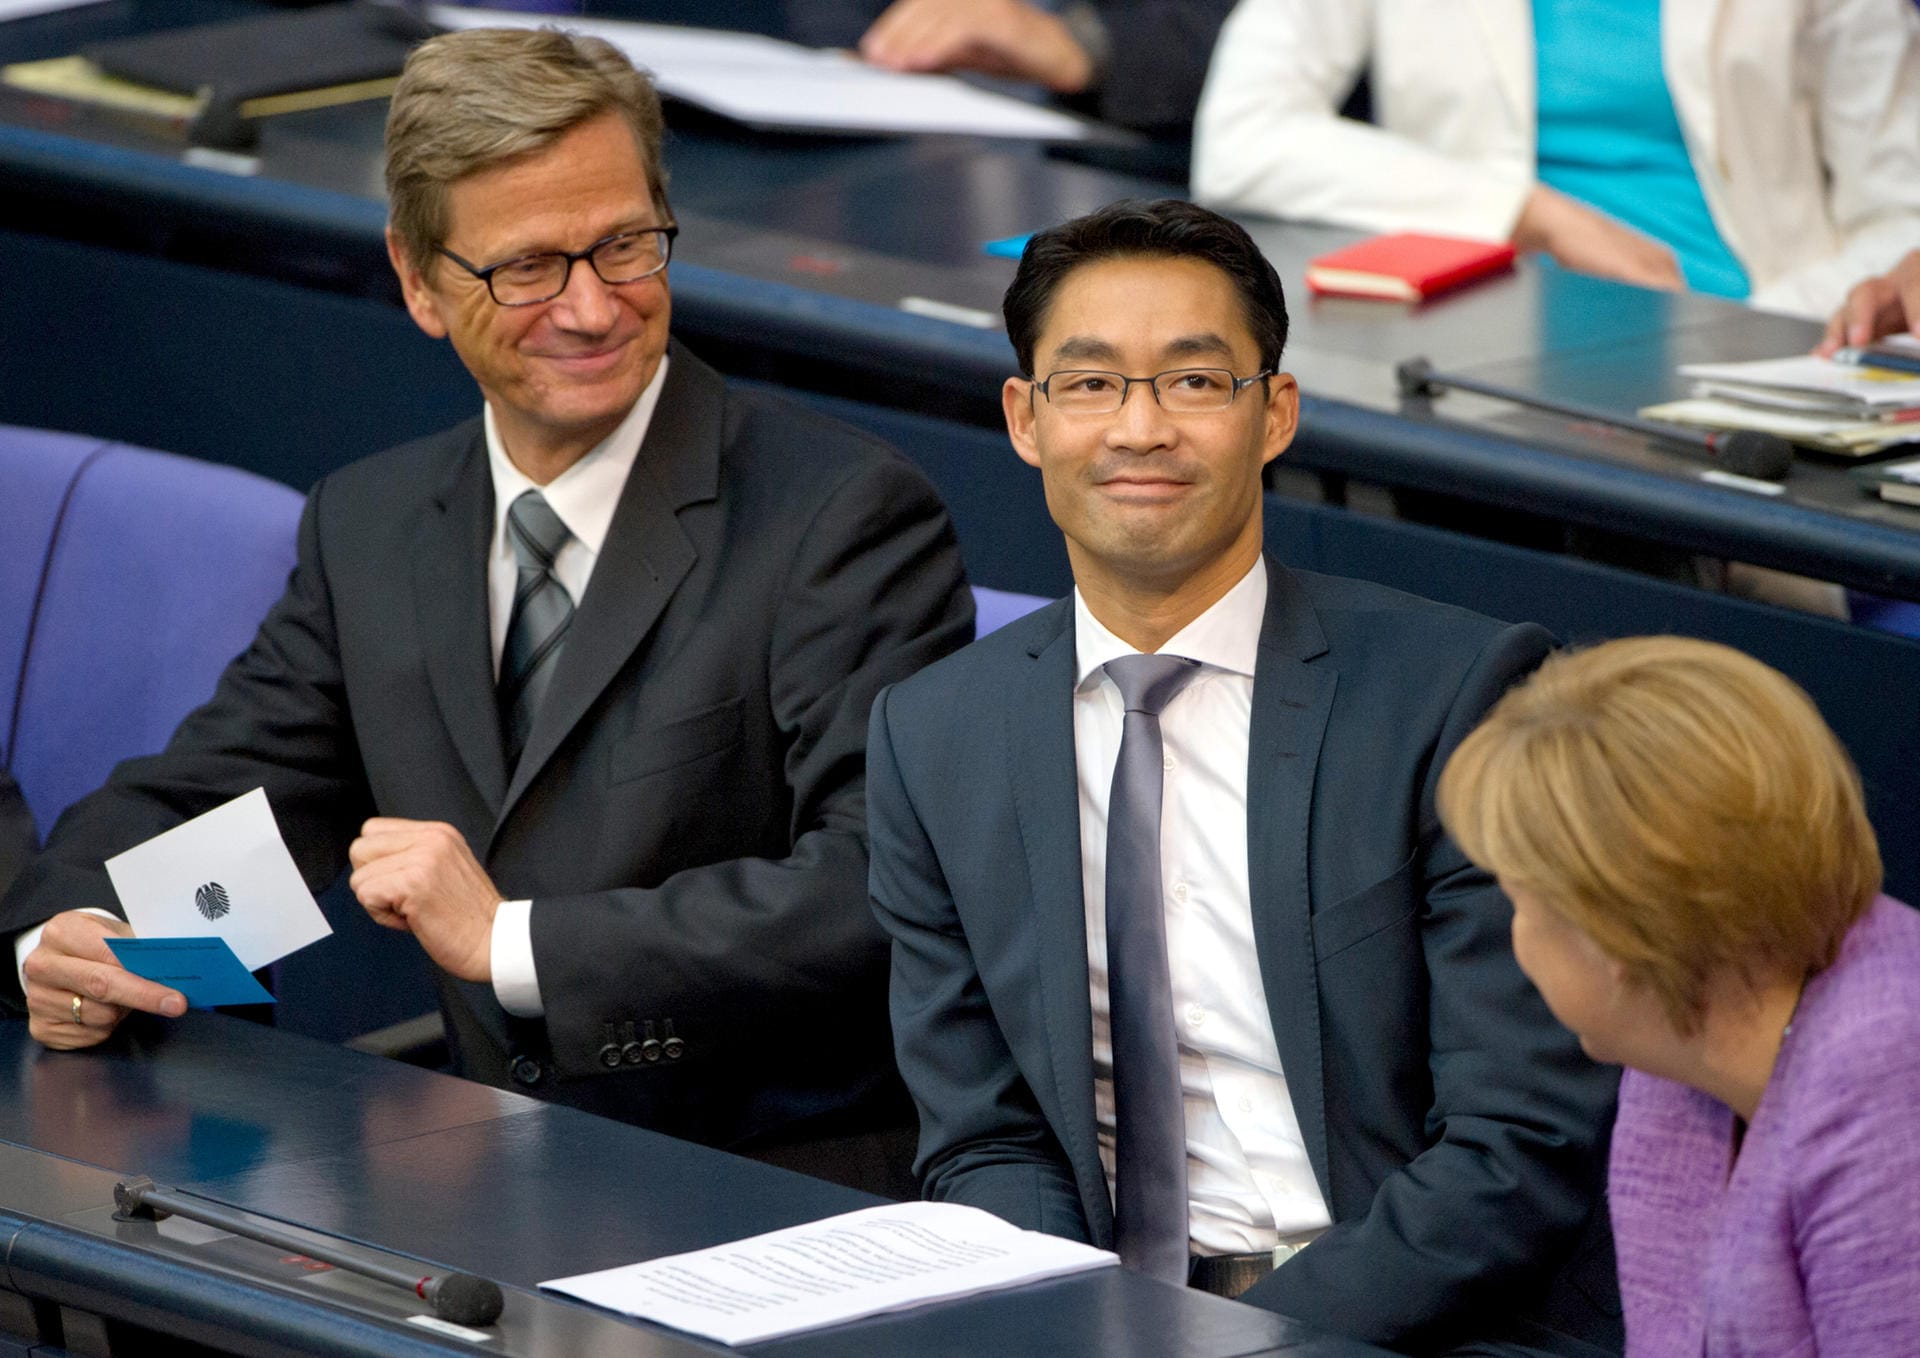 Bundeskanzlerin Angela Merkel (CDU) während einer Sitzung des Bundestages mit Philipp Rösler (FDP) und Bundesaußenminister Guido Westerwelle (FDP).